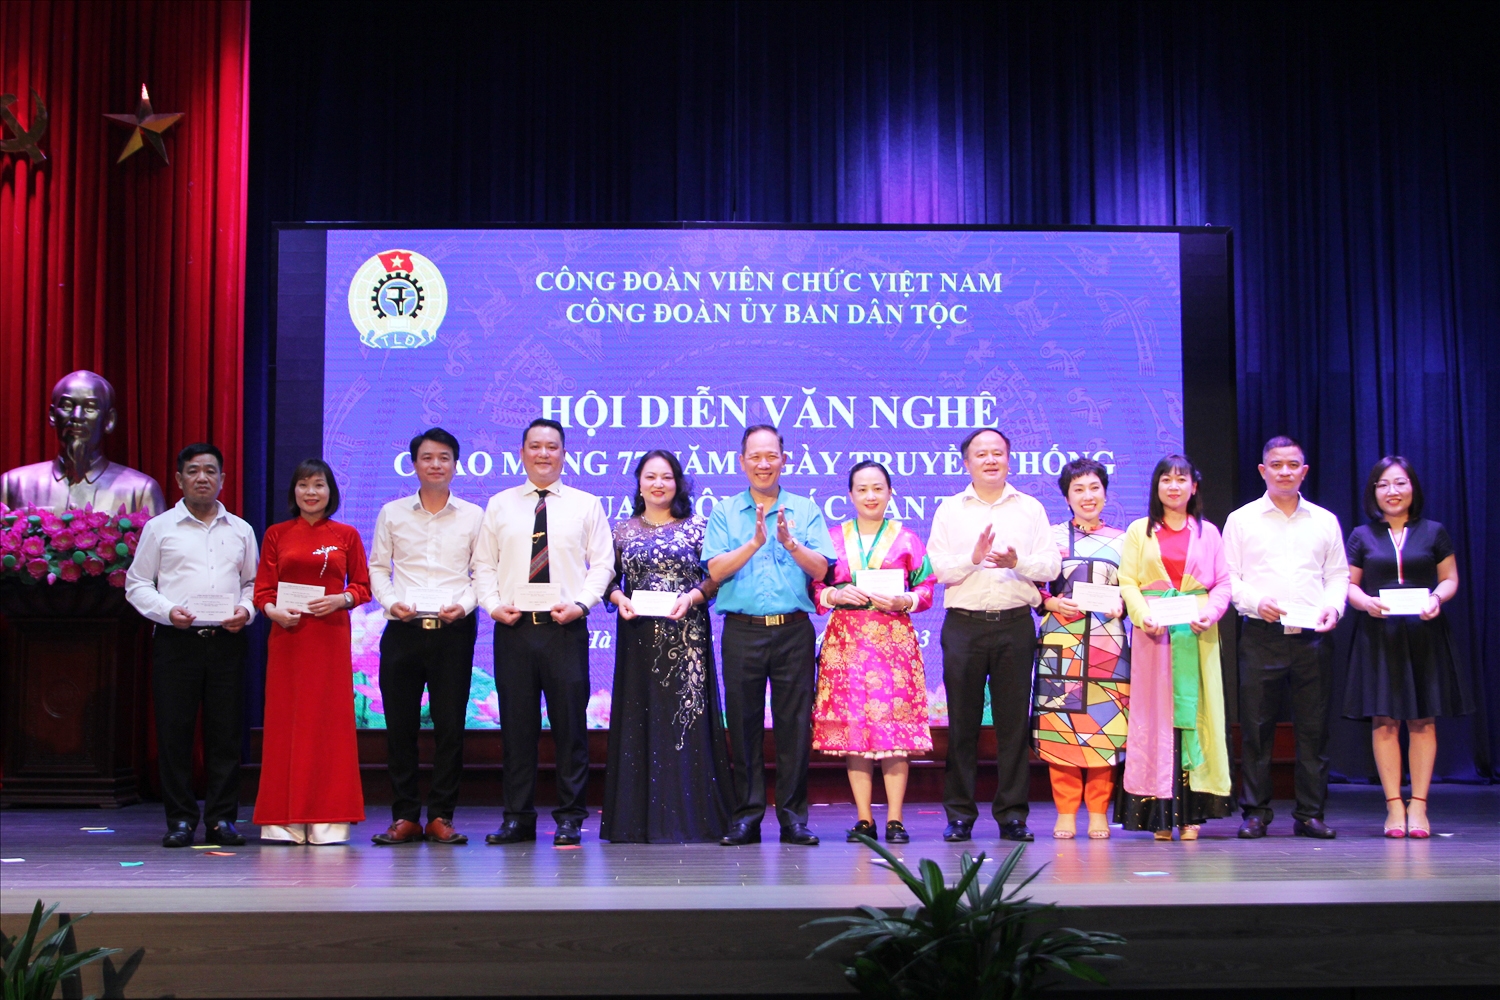 Chủ tịch Công đoàn UBDT Nguyễn Quang Hải cùng Chánh Văn phòng Ủy ban Lò Quang Tú trao giải đơn ca cho các đội tham dự Hội thi